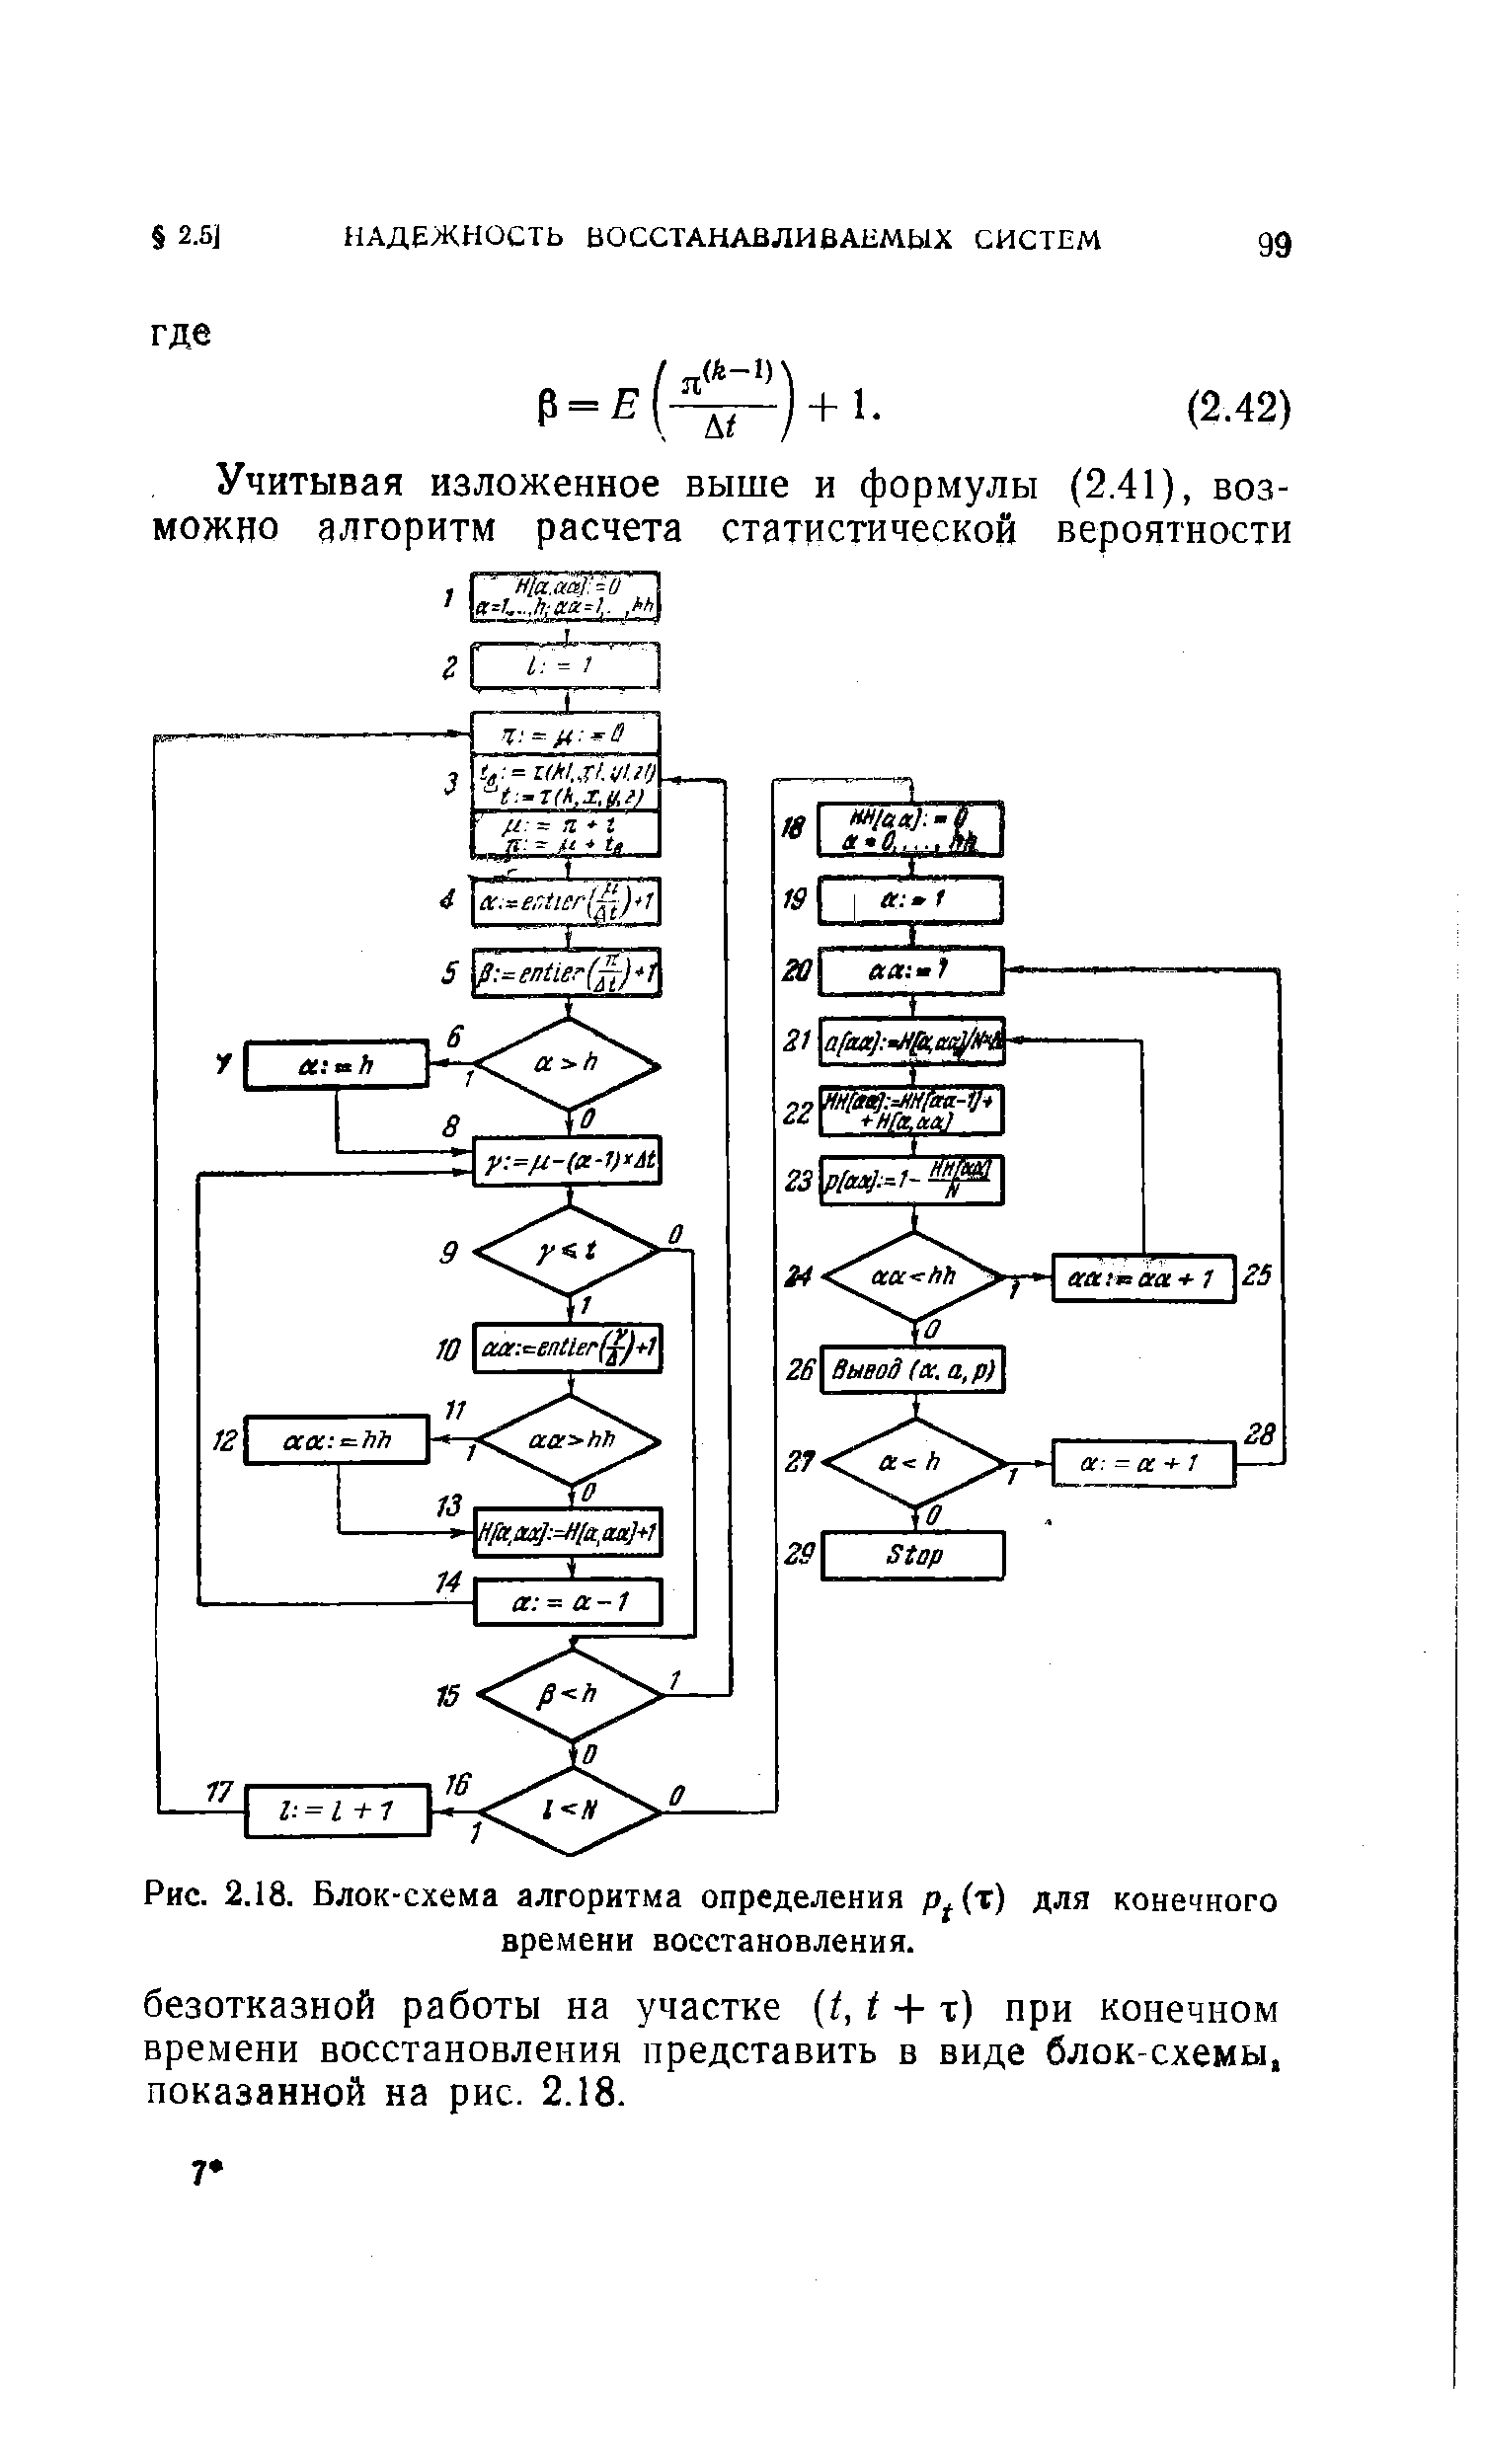 Рис. 2.18. Блок-схема алгоритма определения р (т) для конечного времени восстановления.
